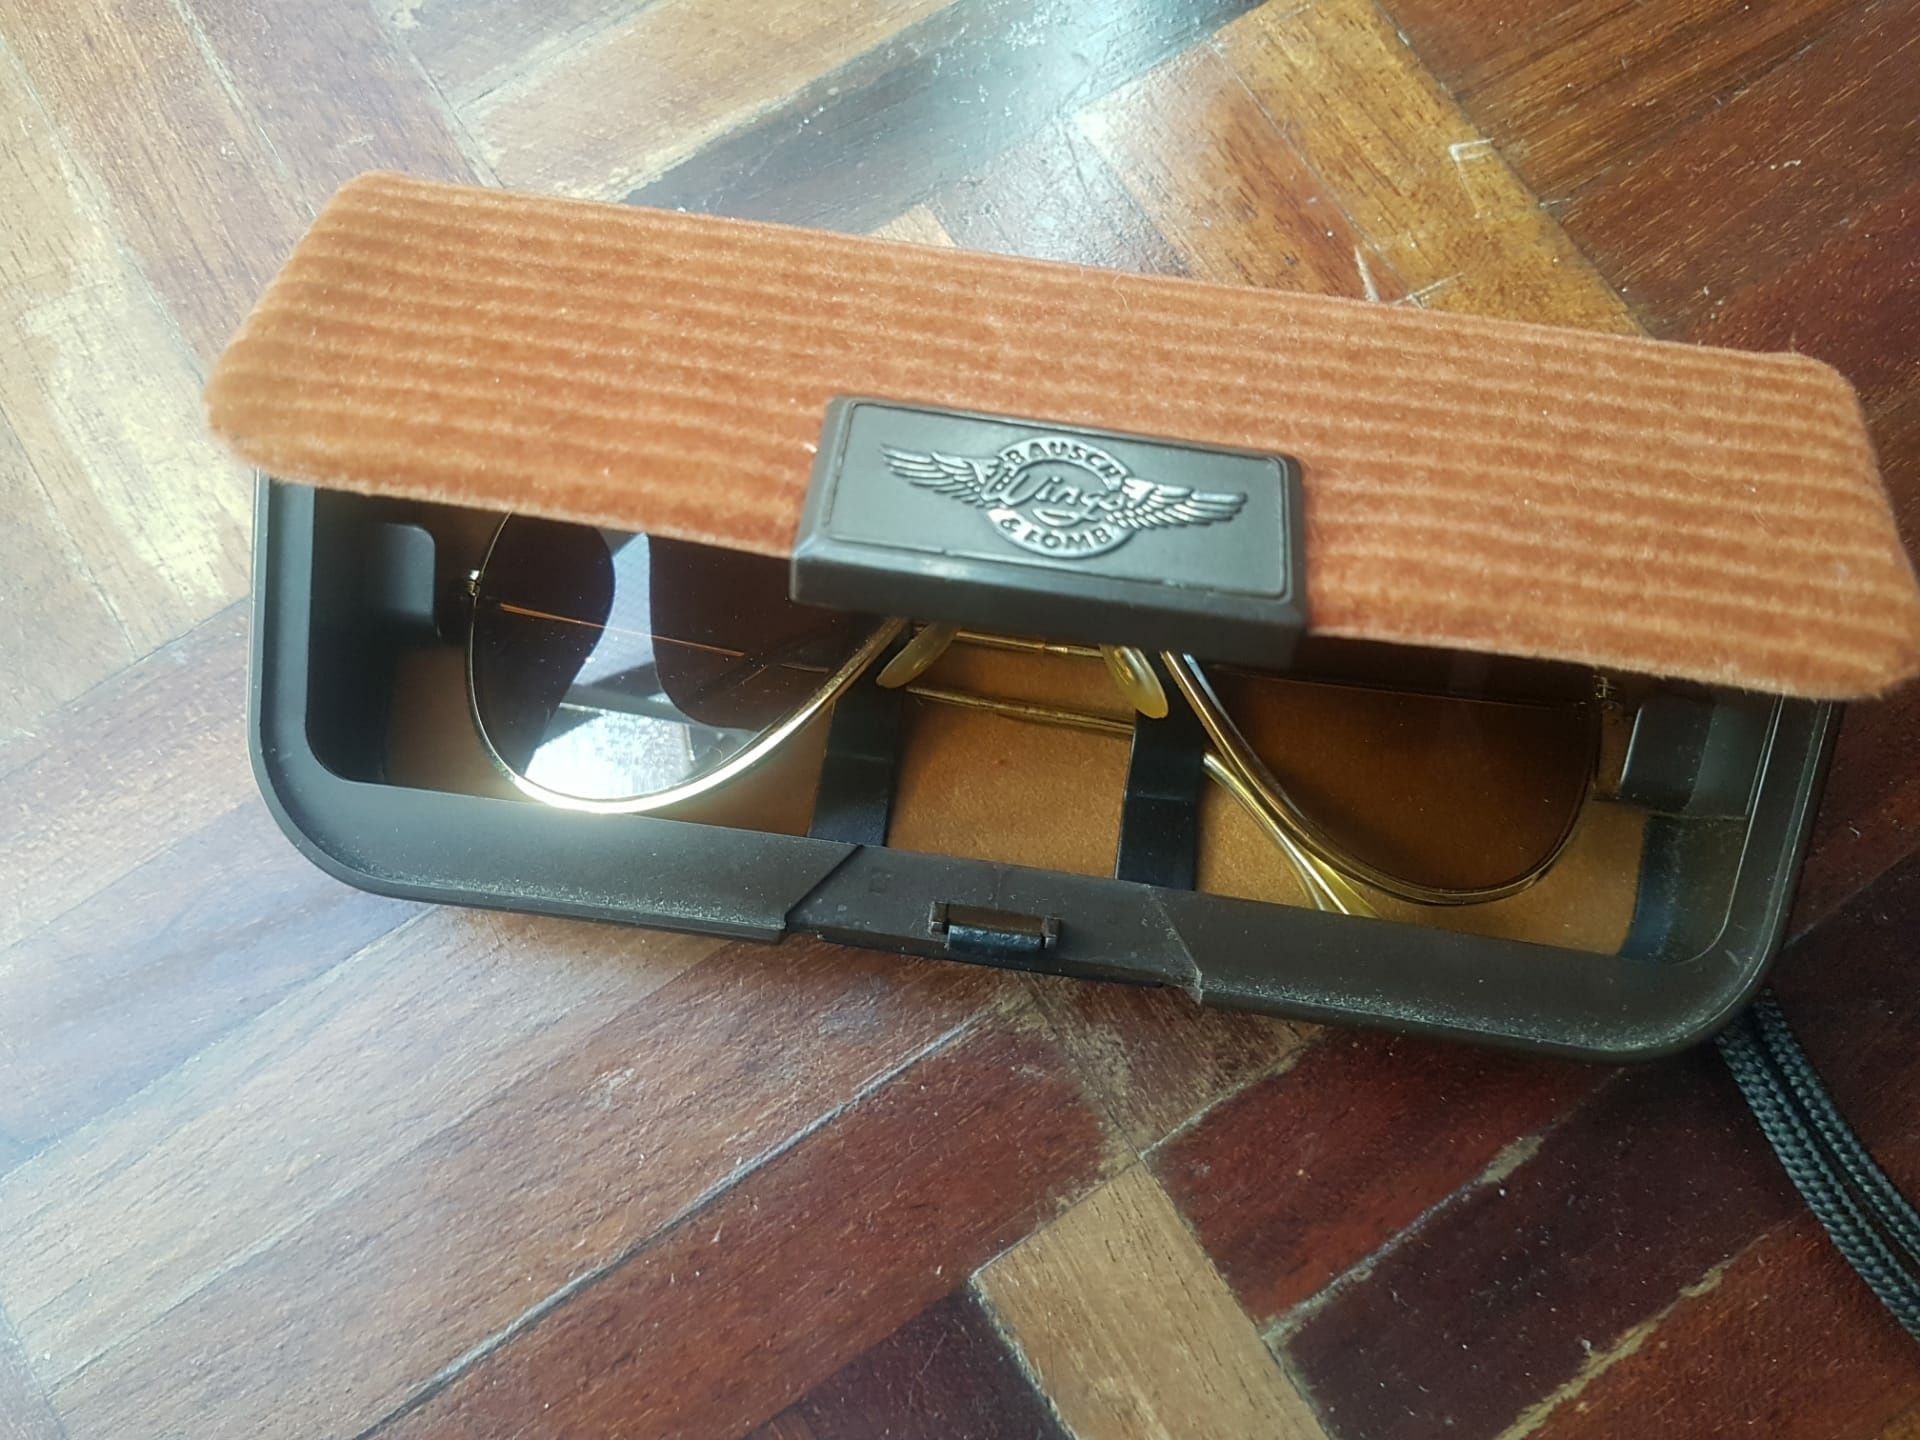 Oculos de sol  aviador Wings bausch & lomb vintage